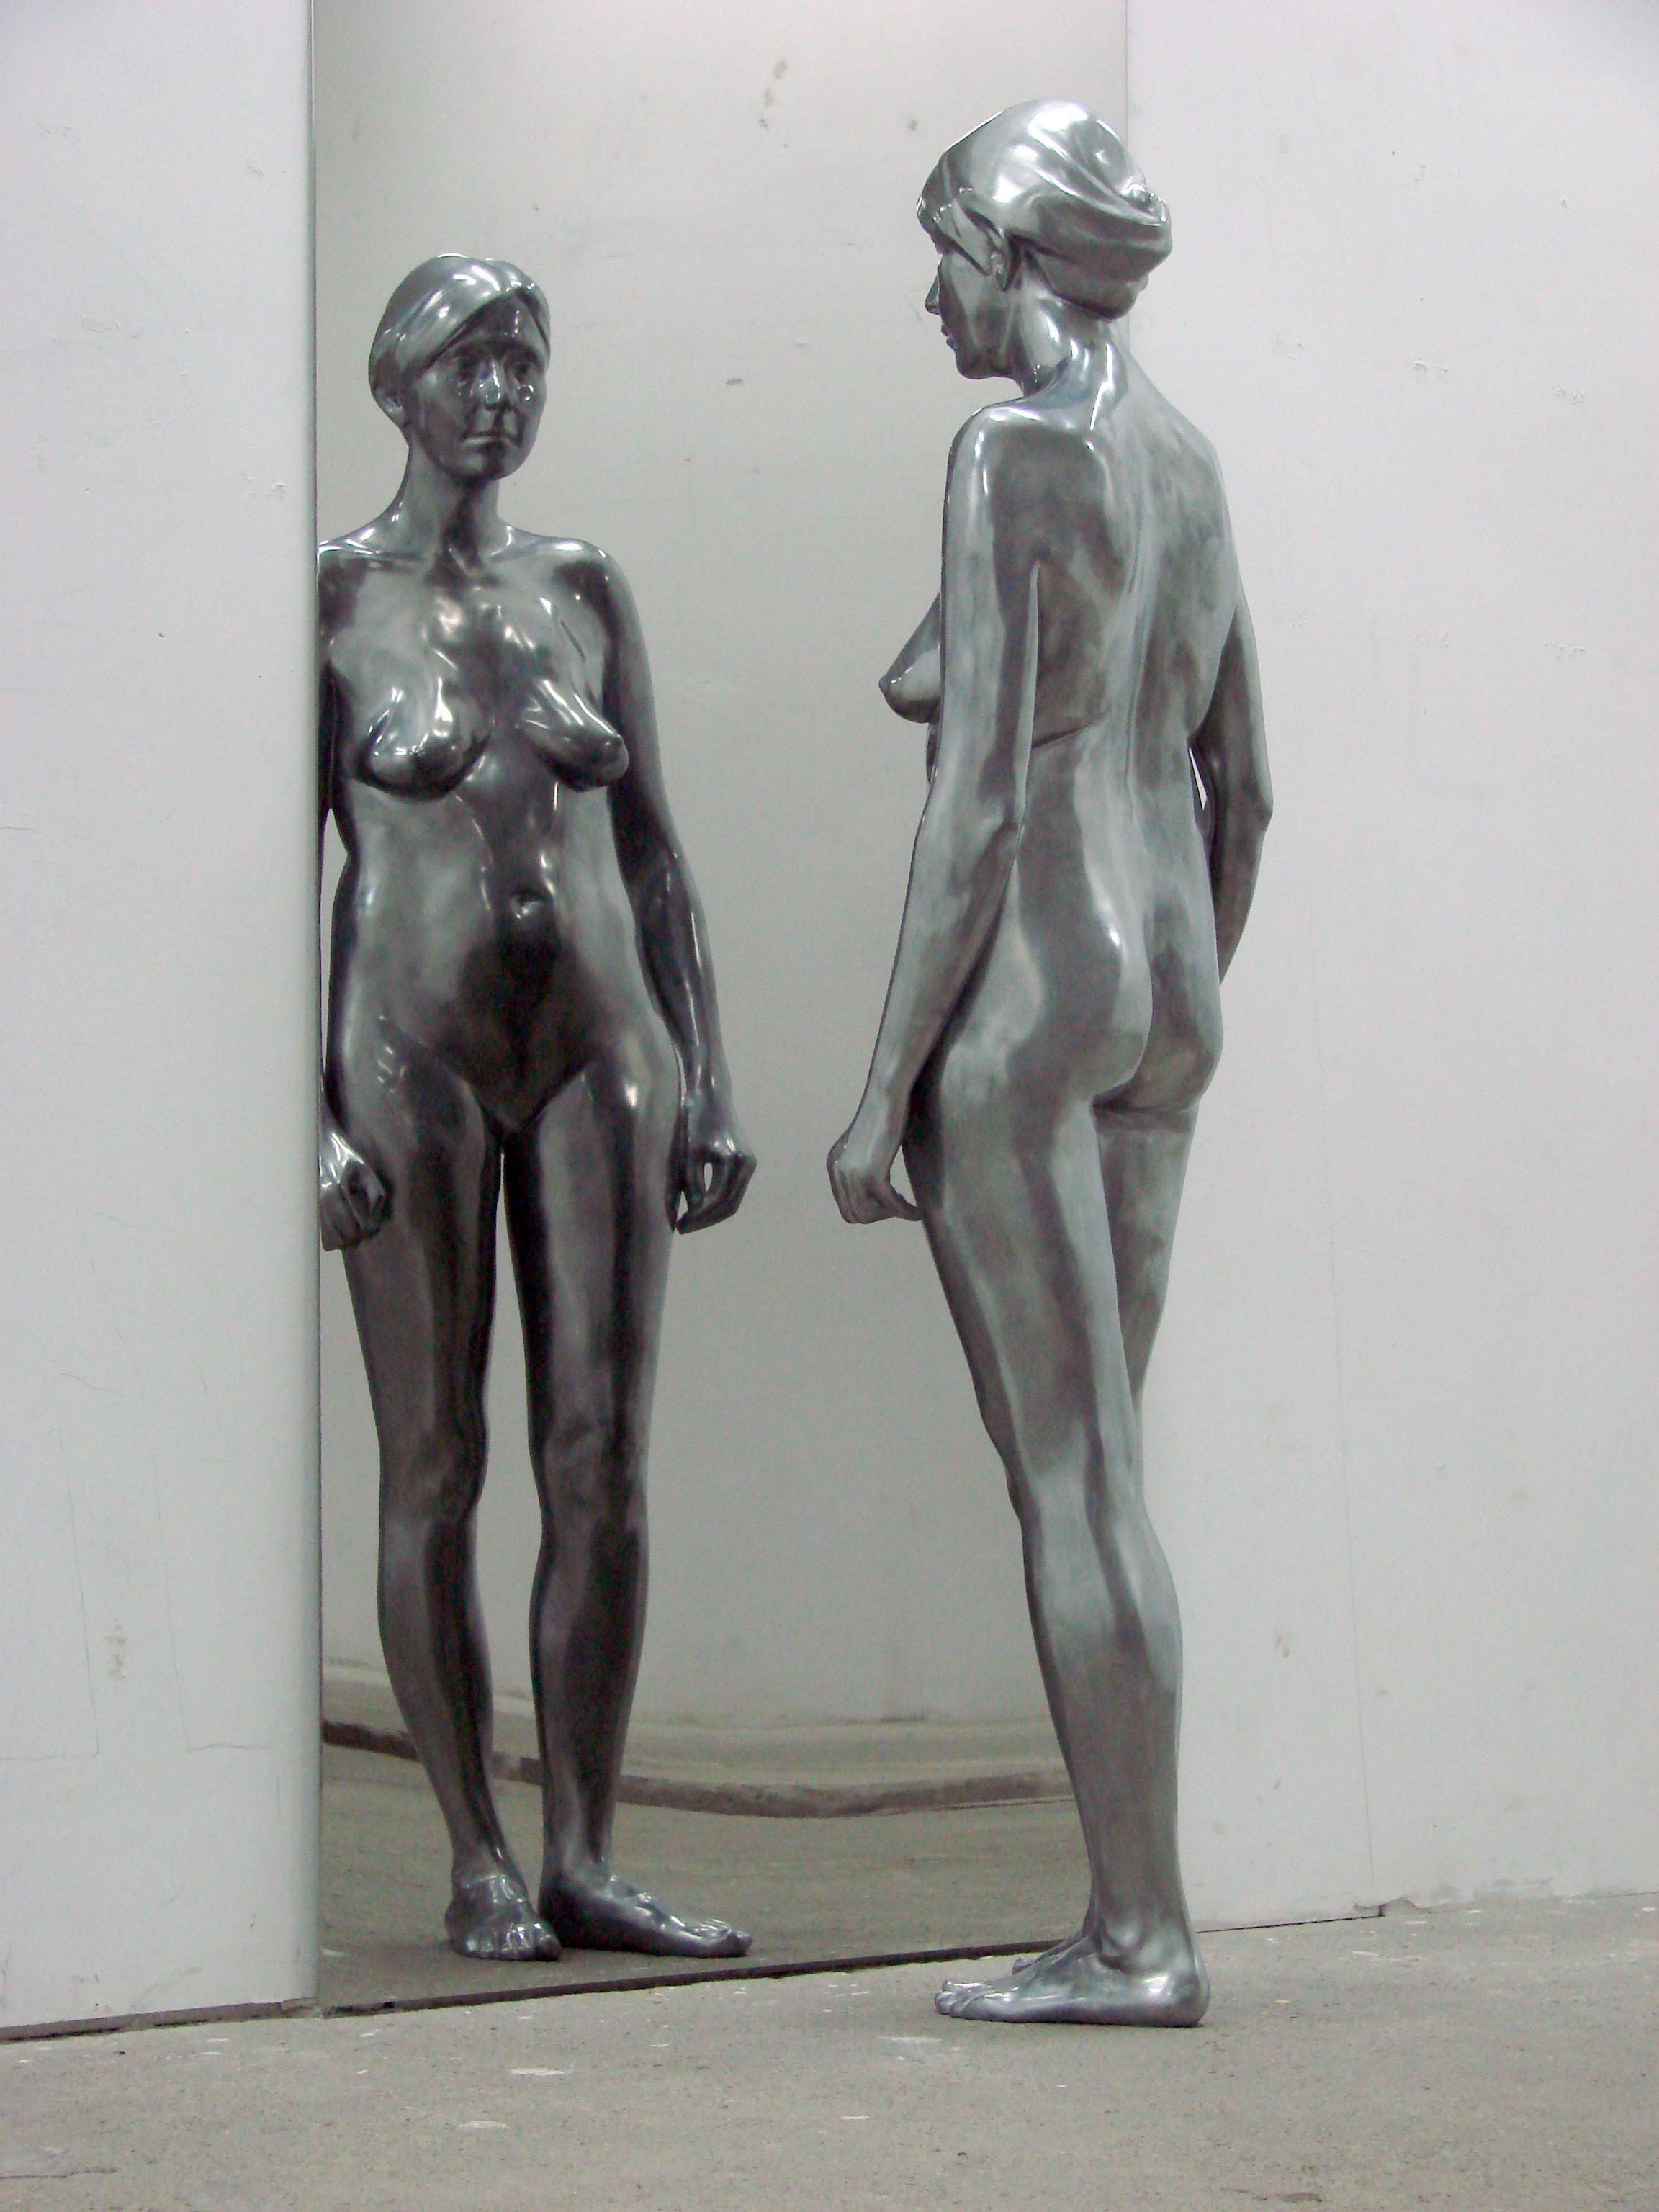 Sylwia Jakubowska-Szycik est professeur à l'Académie des Beaux-Arts, à la faculté de sculpture et d'intermédia de Gdańsk, elle dirige des cours dans le domaine de la sculpture et de l'intermédia.

MATERIAL : résine polyester polie, revêtue de poudre